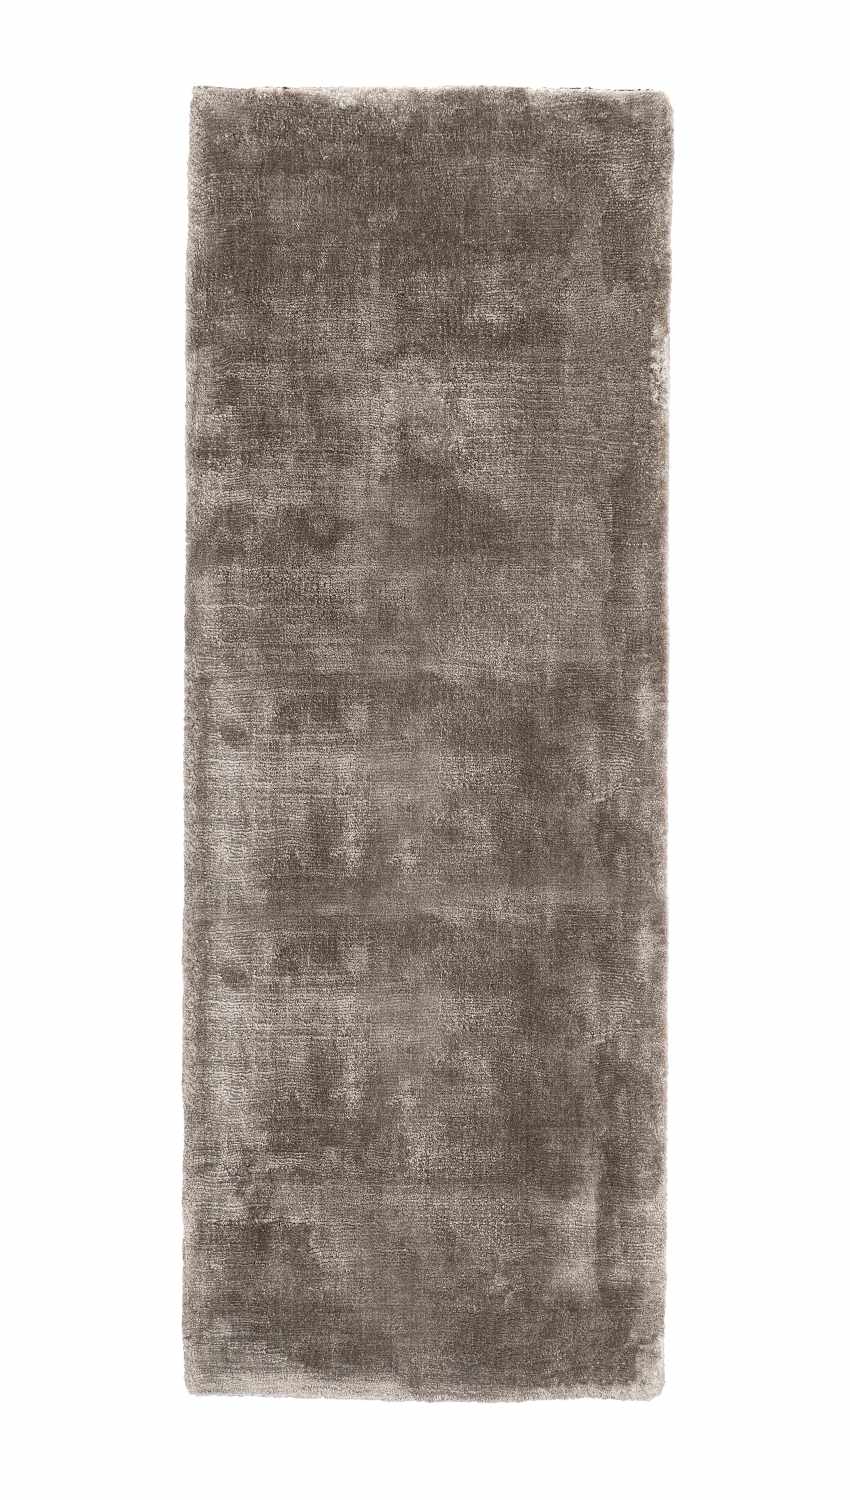 Der Teppich Samadhi überzeugt mit seinem modernen Design. Gefertigt wurde die Vorderseite aus Viskose und die Rückseite ist aus Baumwolle. Der Teppich besitzt einen braunen Farbton und die Maße von 80x200 cm.